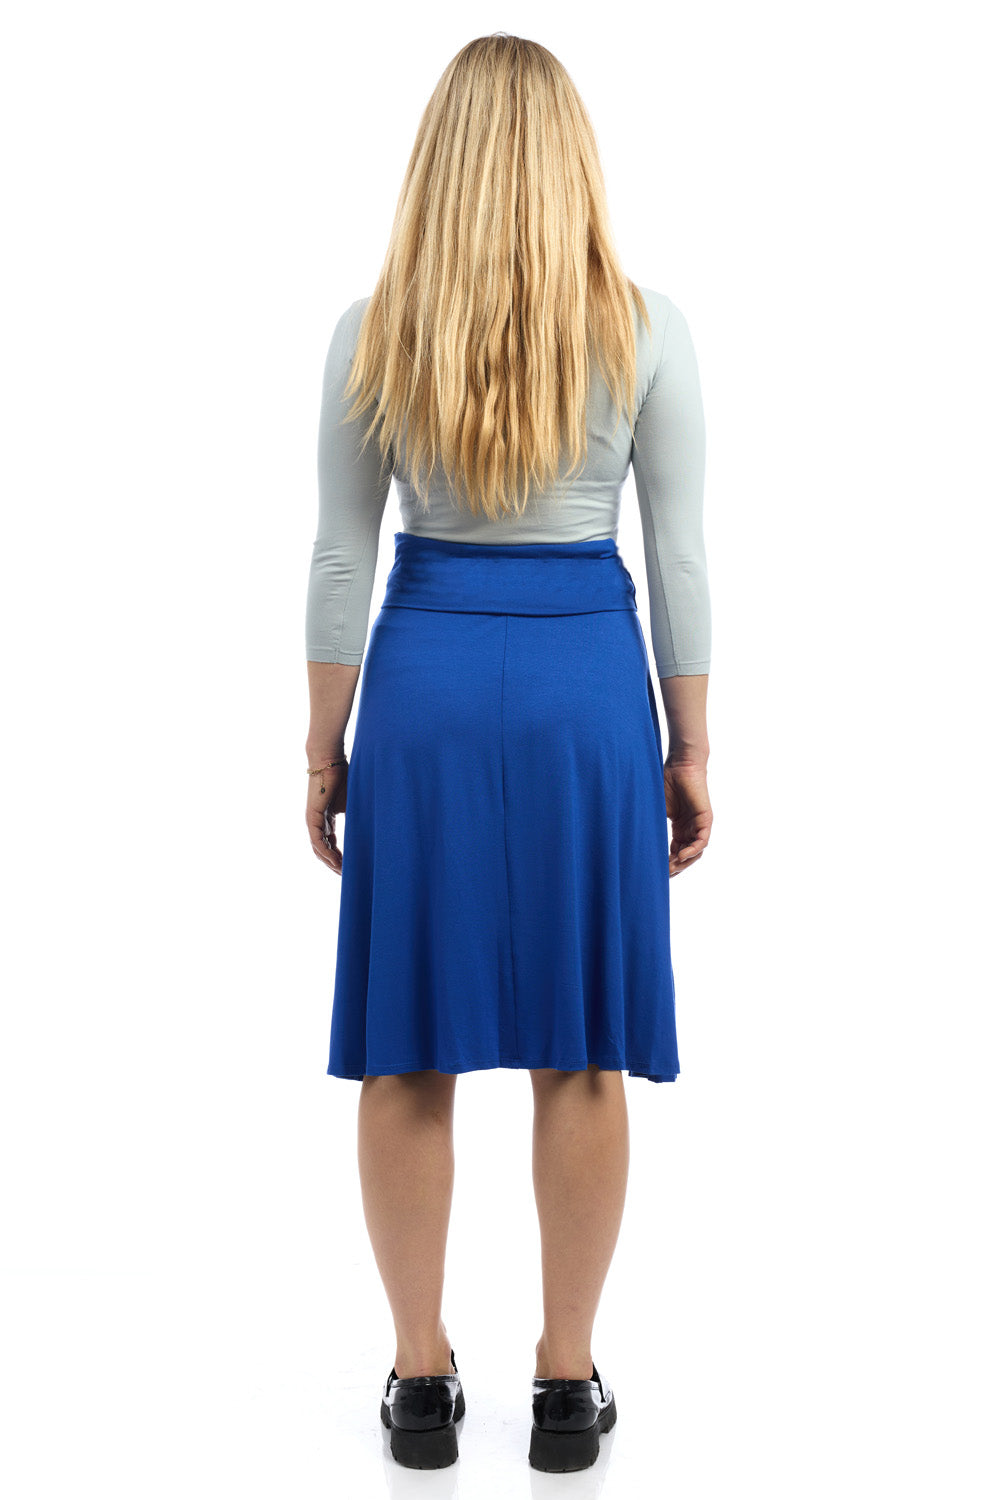 Old Navy inspired foldover flary midi royal blue skirt